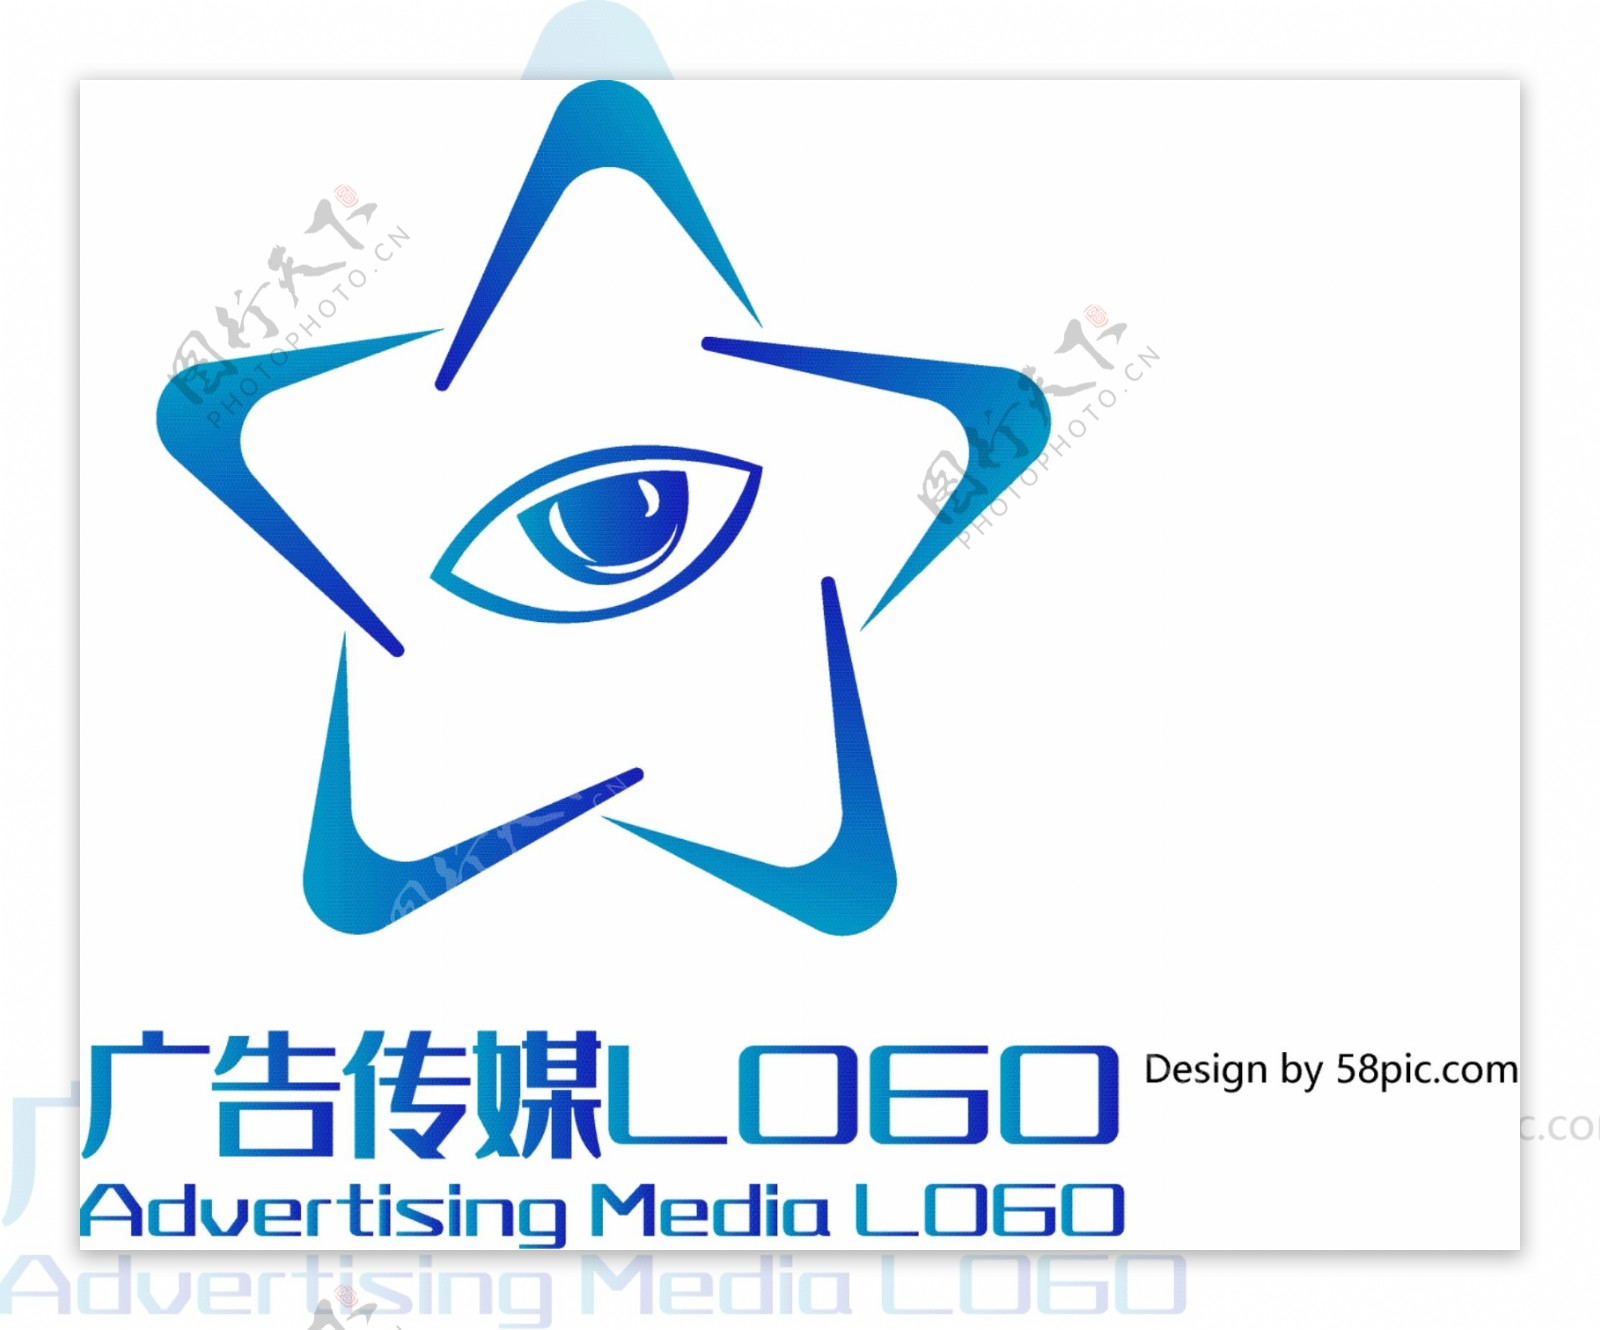 原创创意简约五角星眼睛广告传媒LOGO